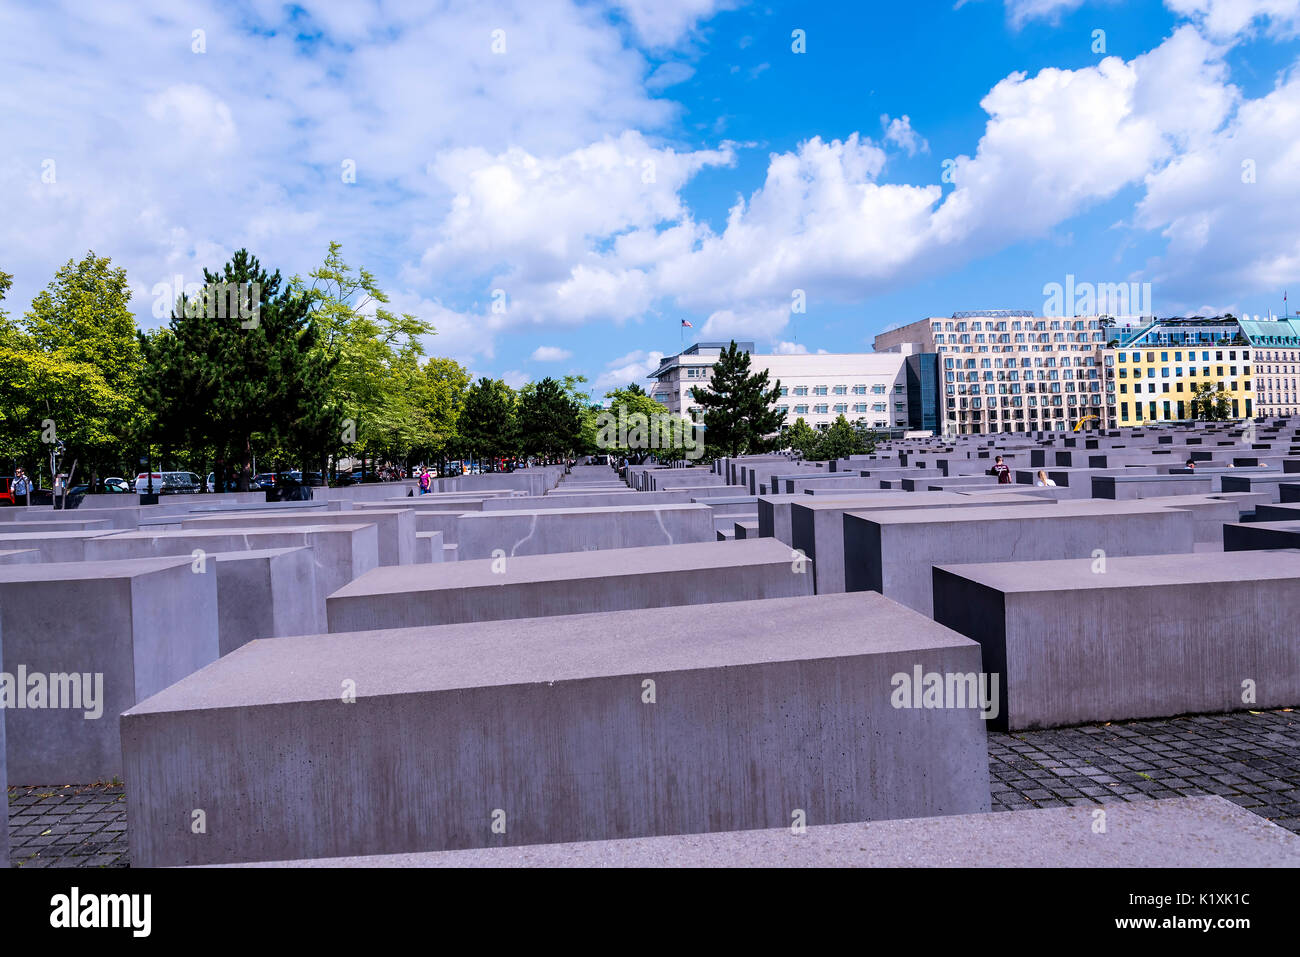 Le mémorial de l'holocauste par la porte de Brandebourg à Berlin Allemagne Banque D'Images